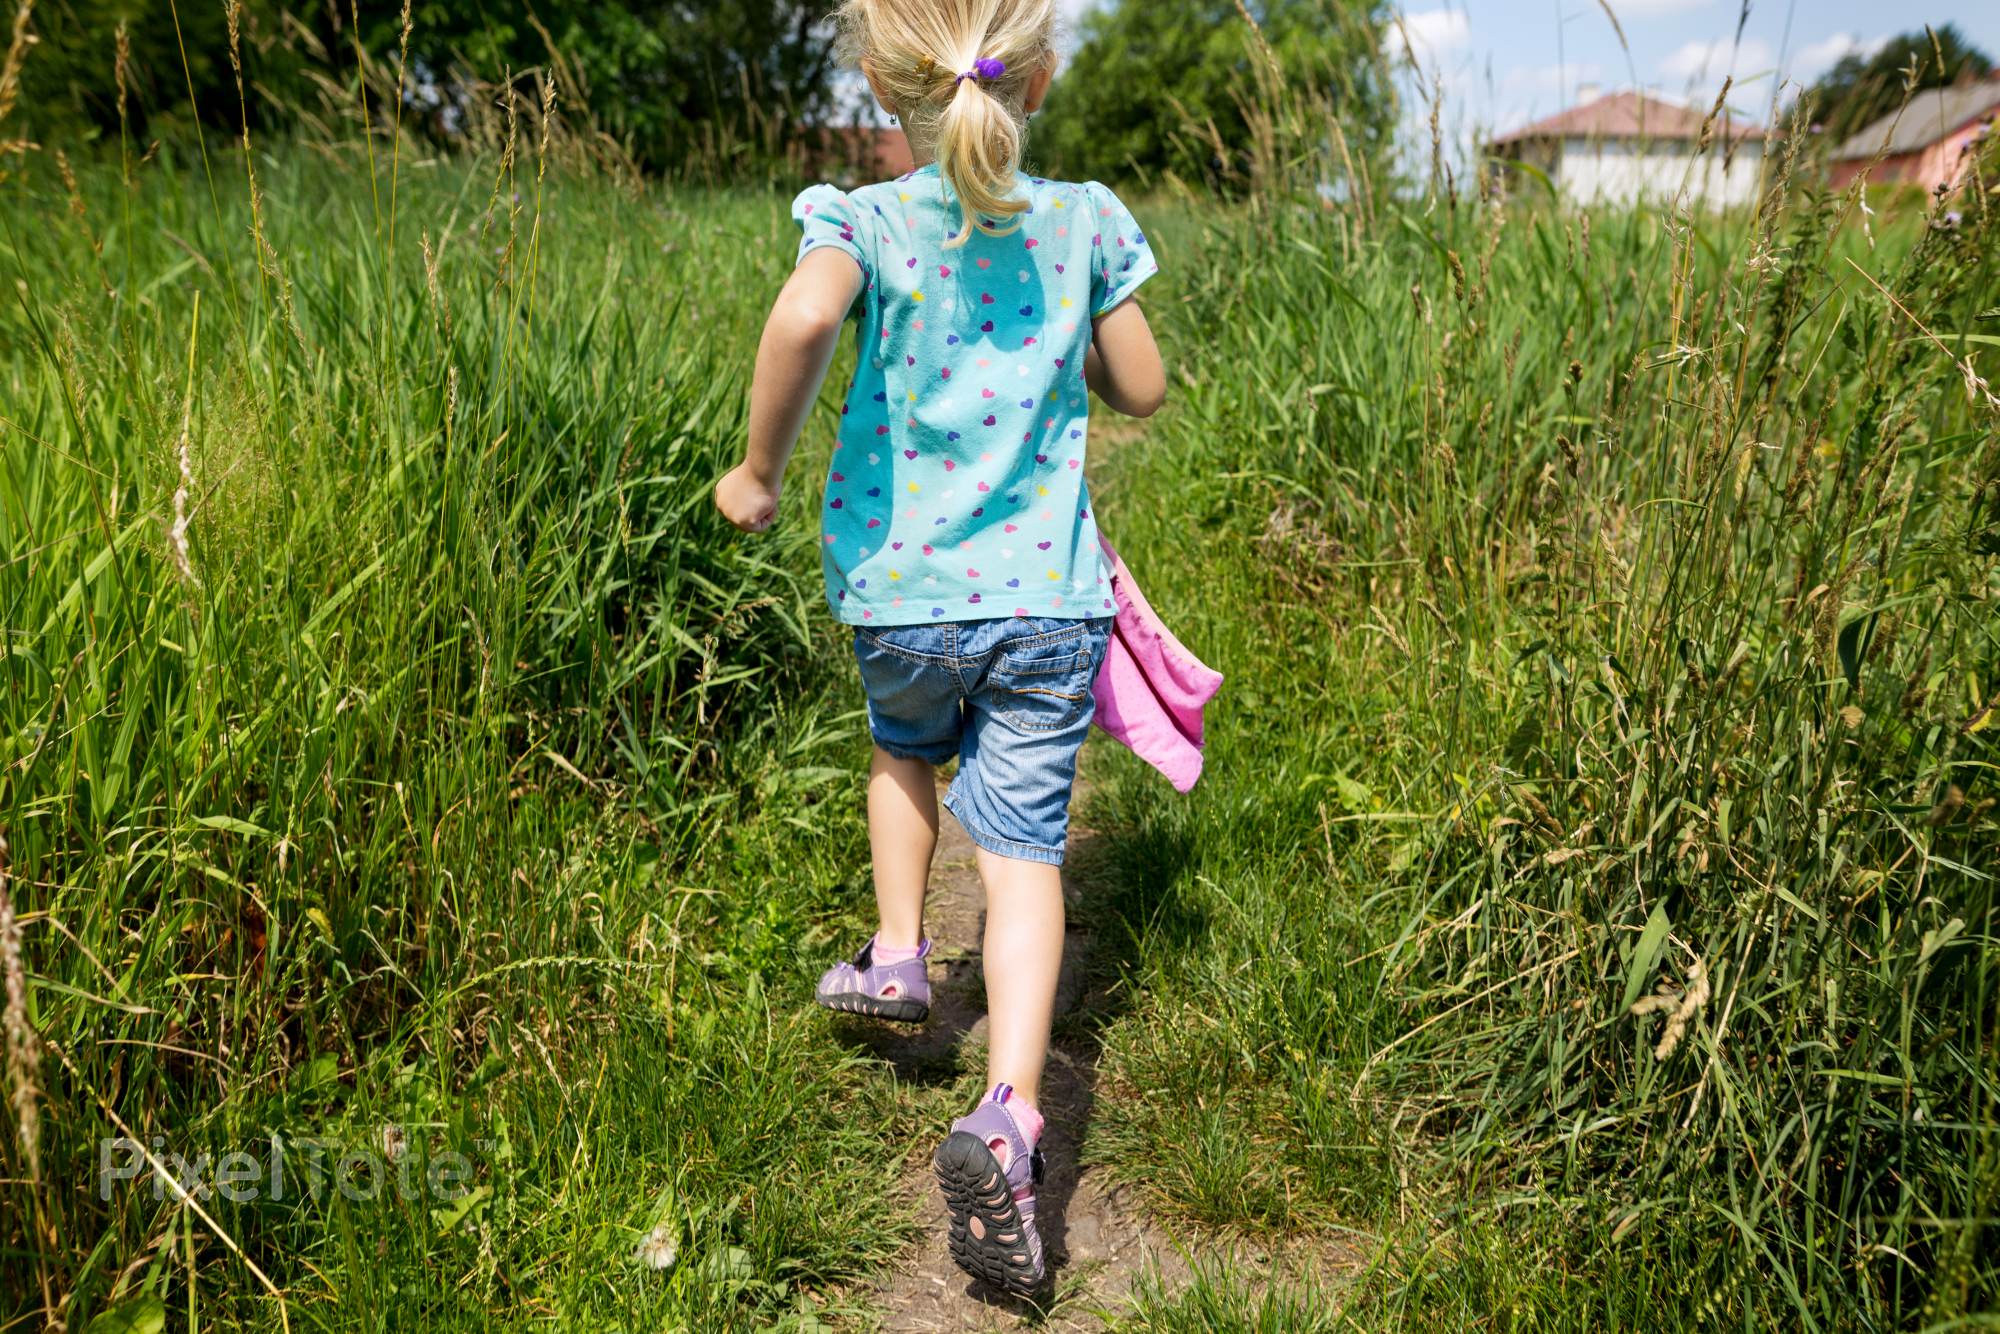 Little Joyful Girl Running on a Trail Through Tall Grass Stock Photo ...